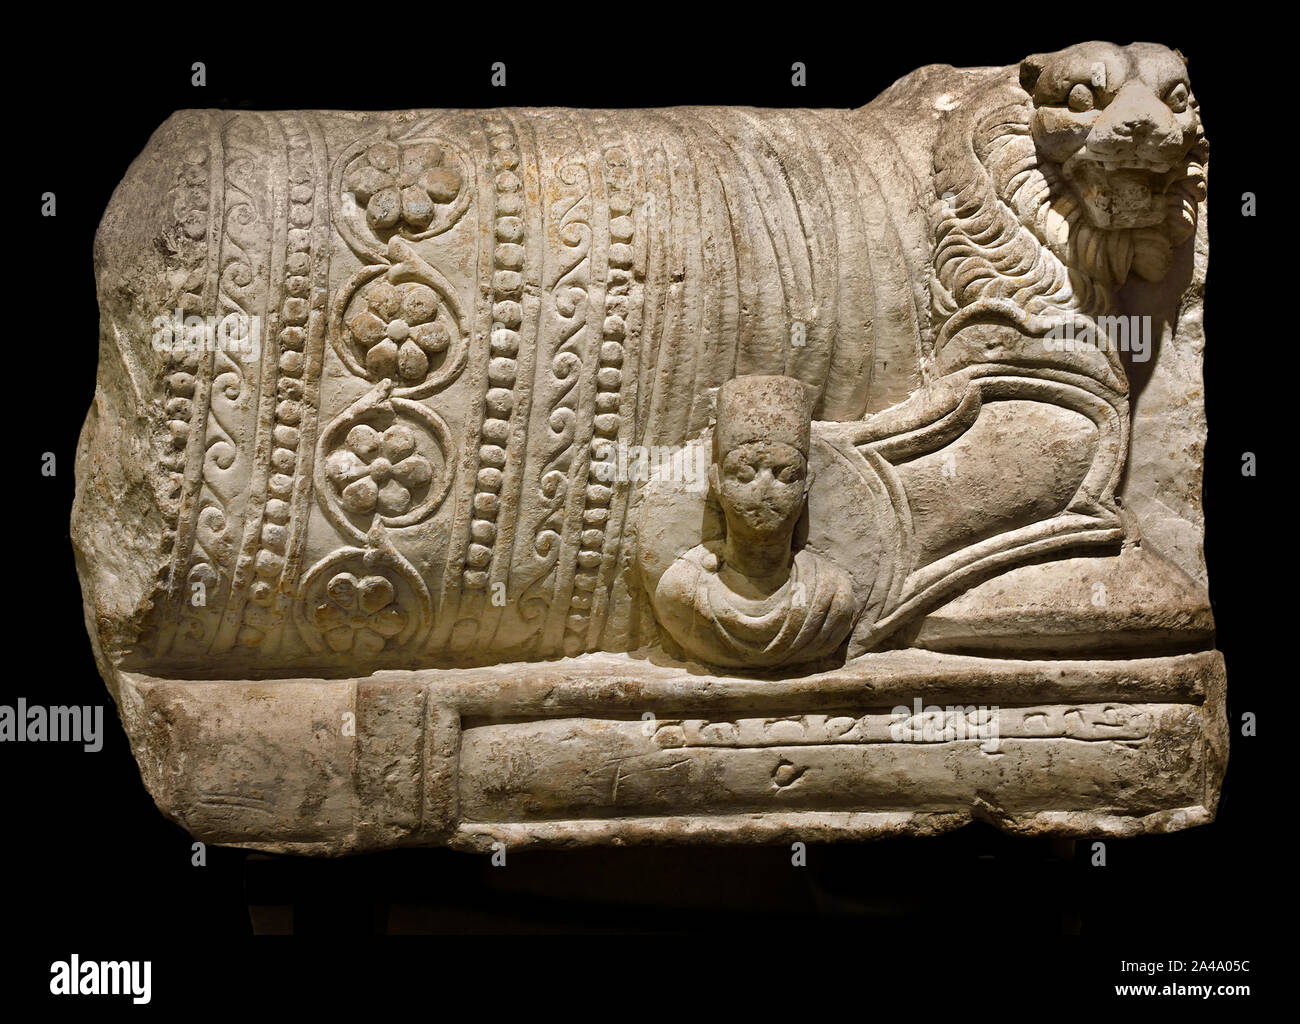 Rilievo funerario del III secolo D.C. Palmyra (antica Tadmor), Siria, calcare (elemento di un sarcofago.) Banchetto adornata con un busto di un uomo che indossa la pettinatura cilindrico. Foto Stock